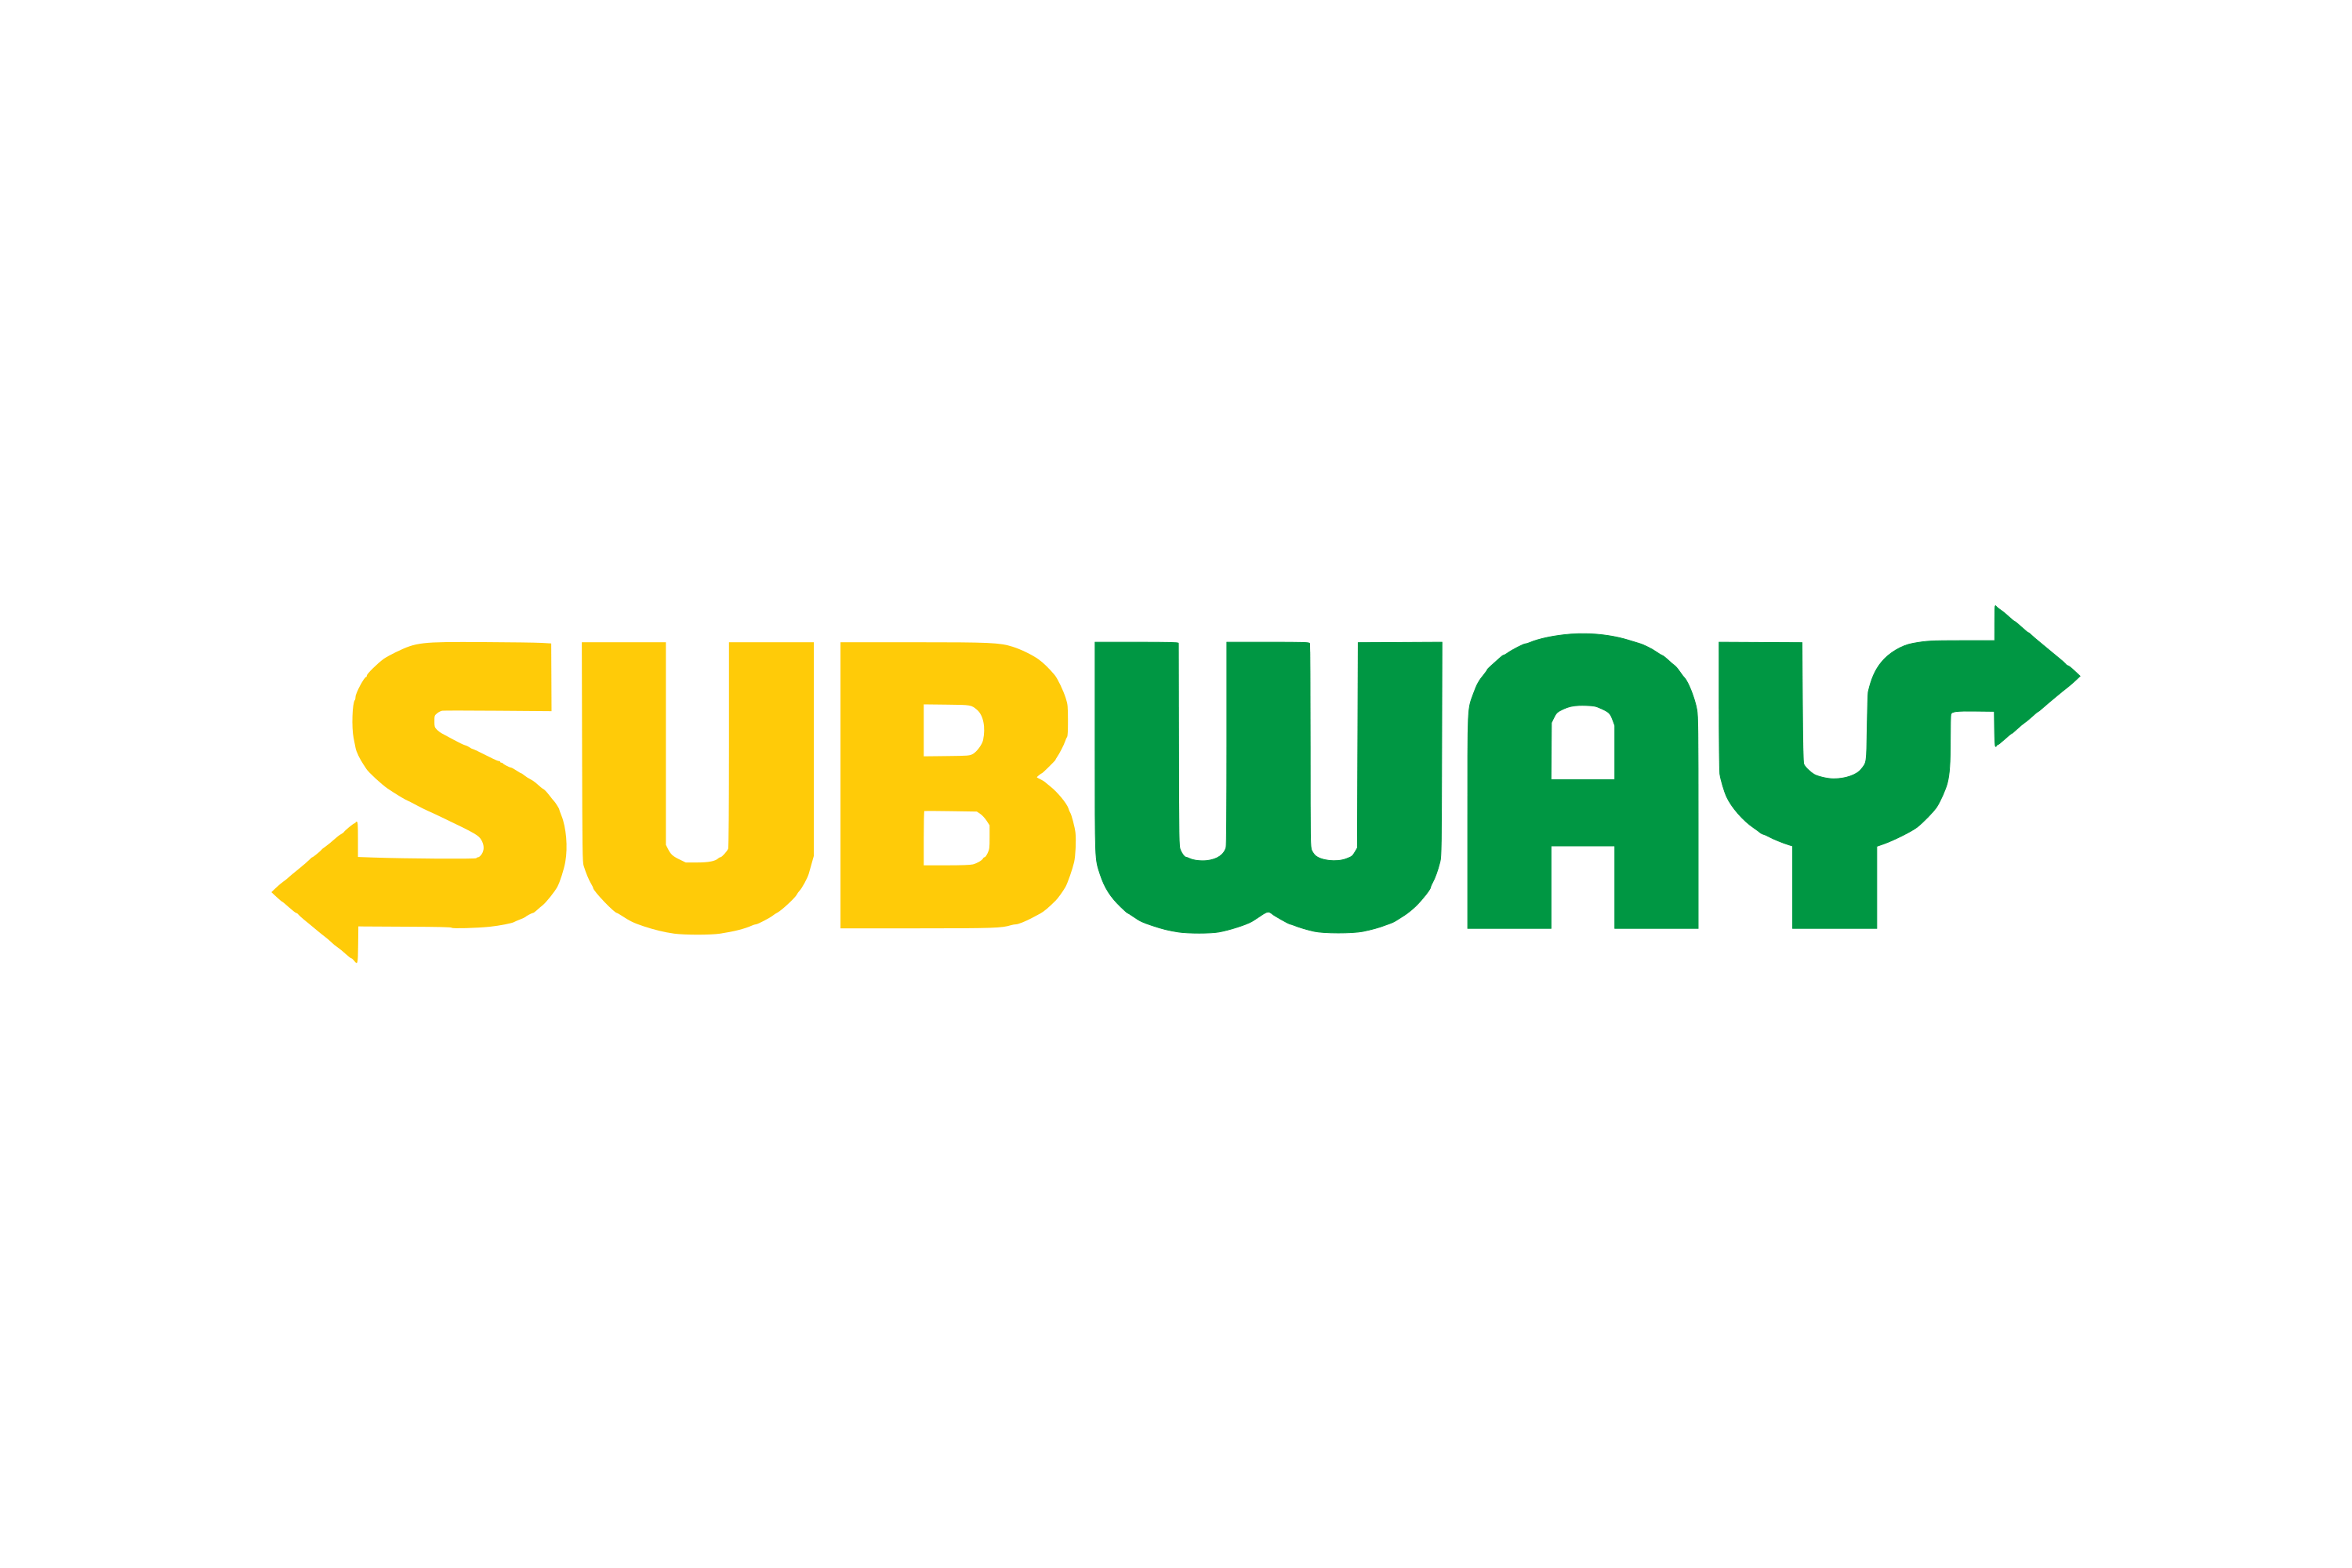 Subway Logo Jpeg.png | City O